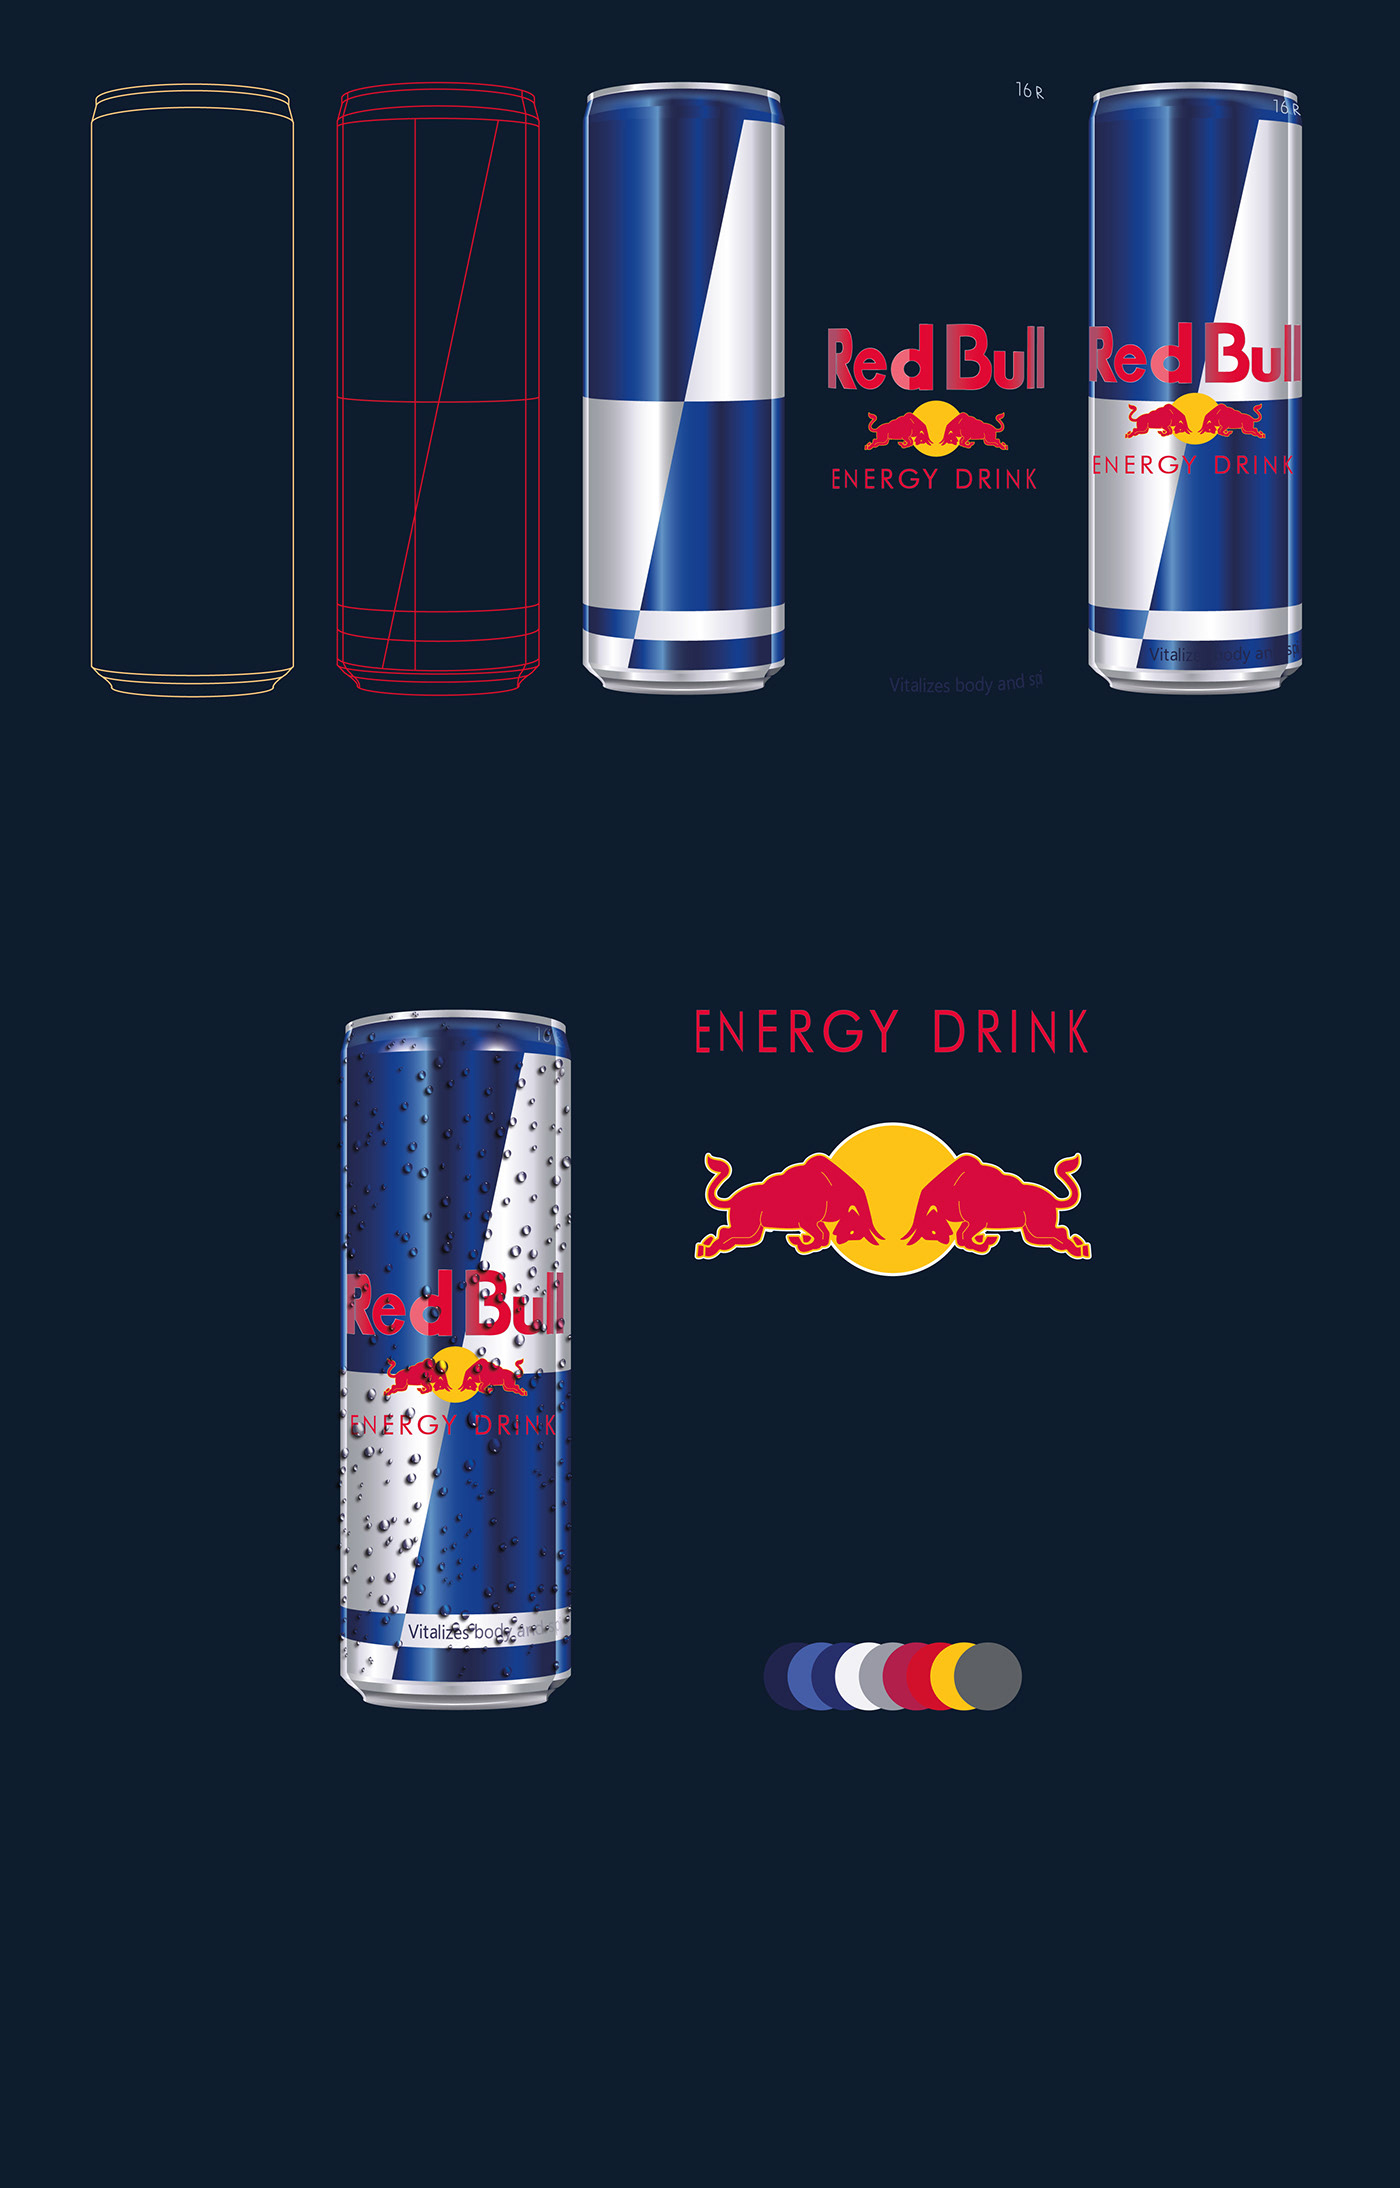 #illustrator #Red Bull